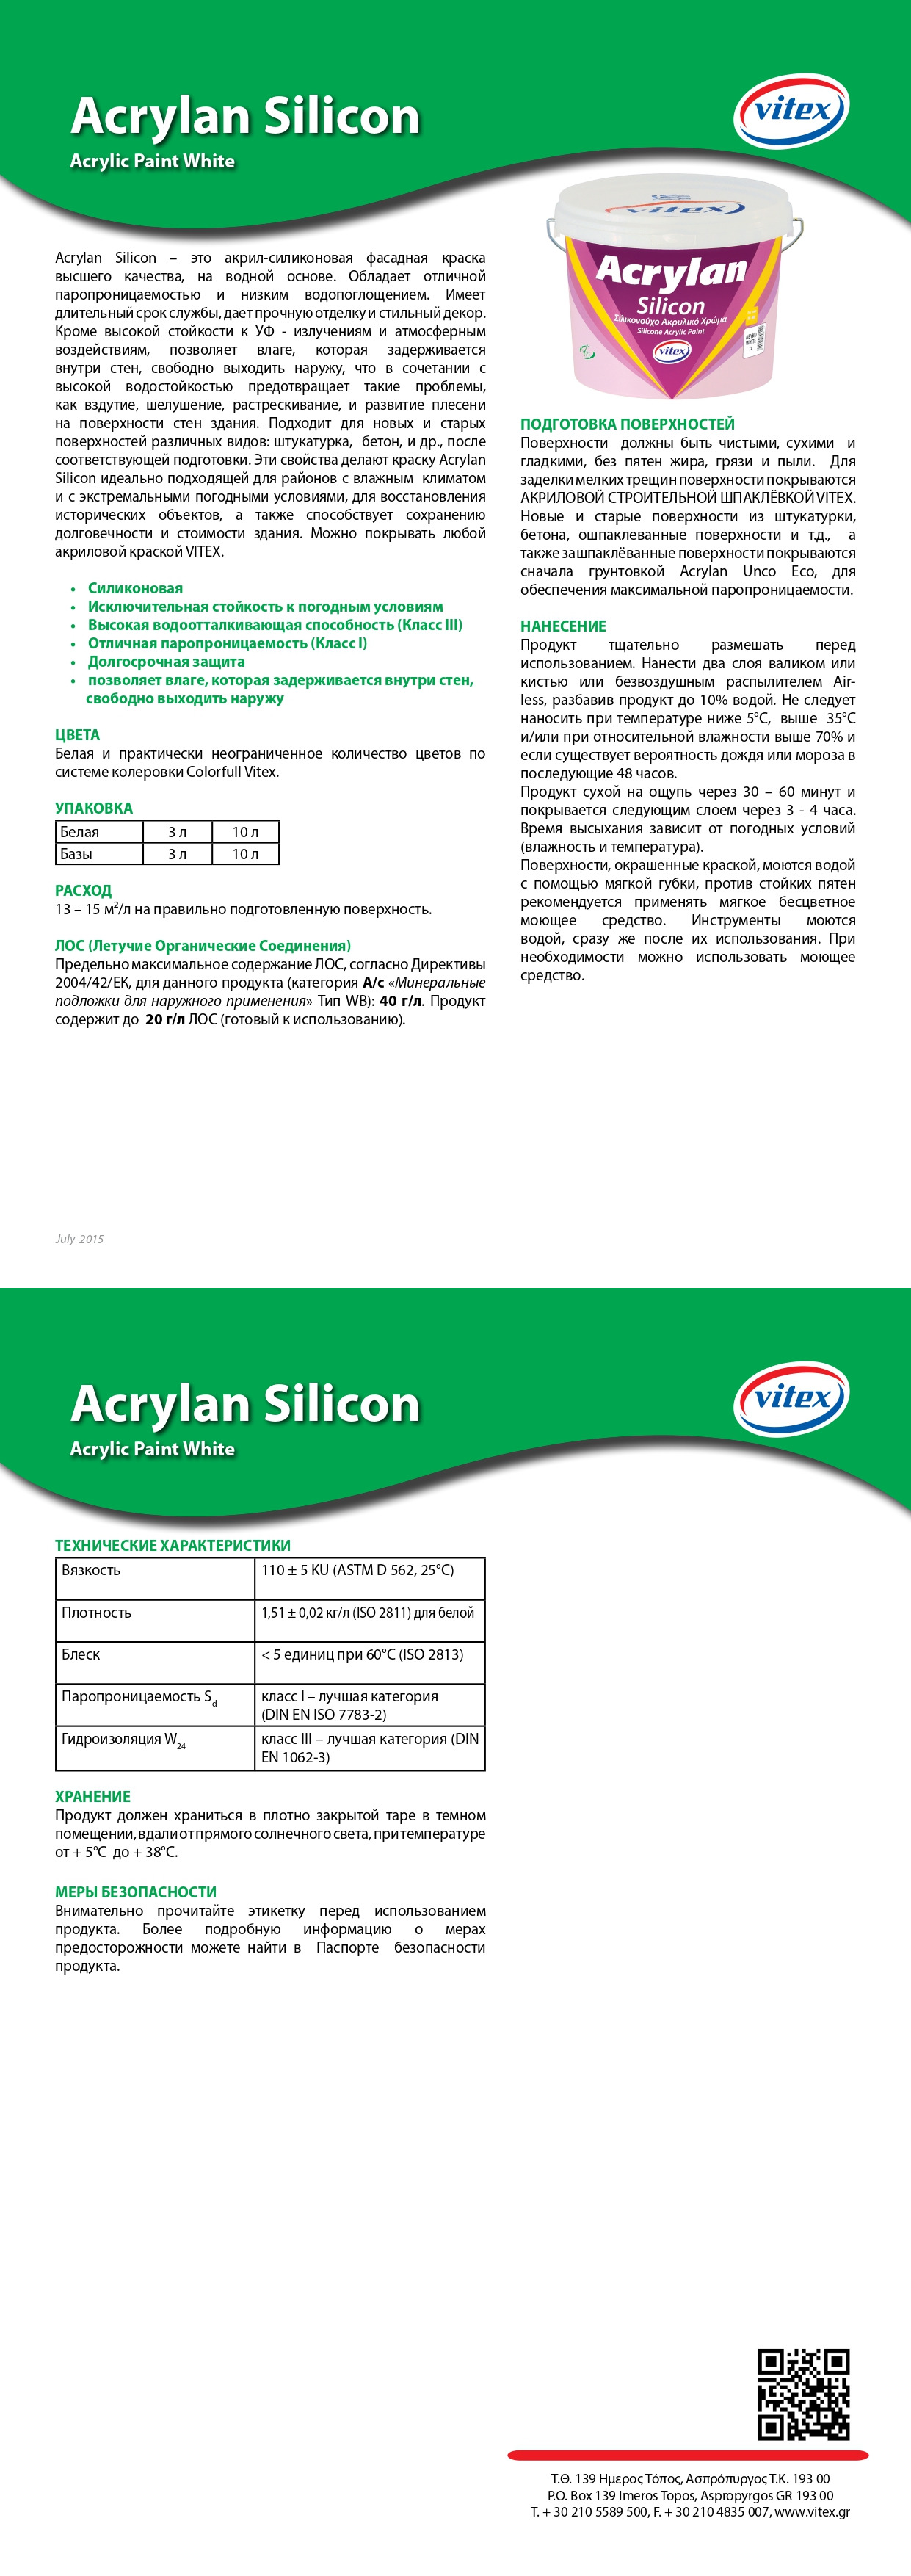 Acrylan Silicon описание